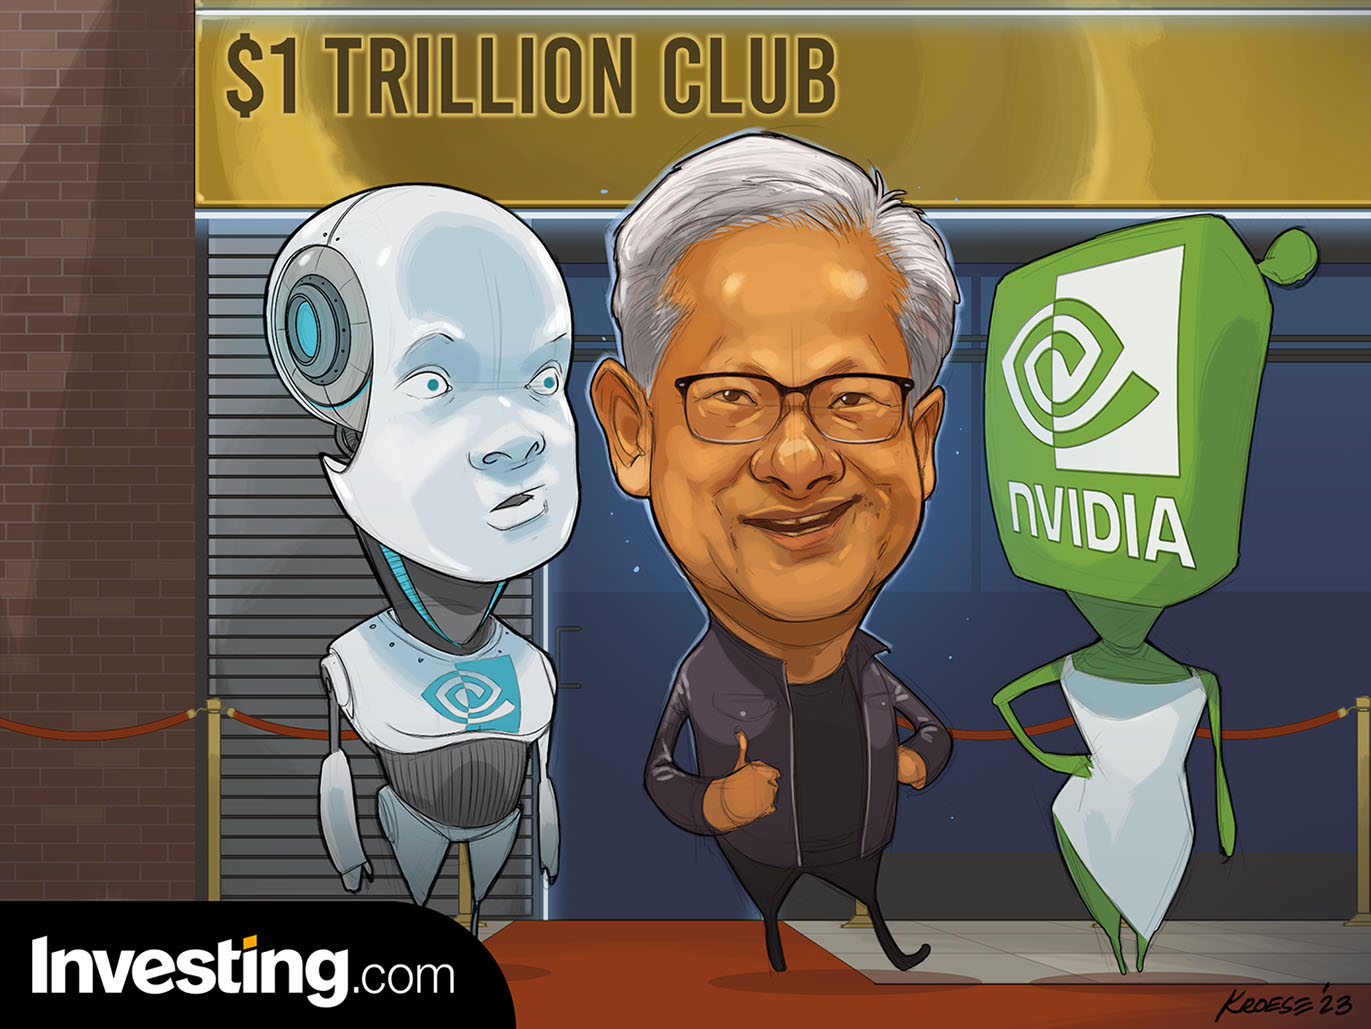 NVIDIAは時価総額1兆ドルクラブに加わった。次に加わる企業はどこだろうか。 